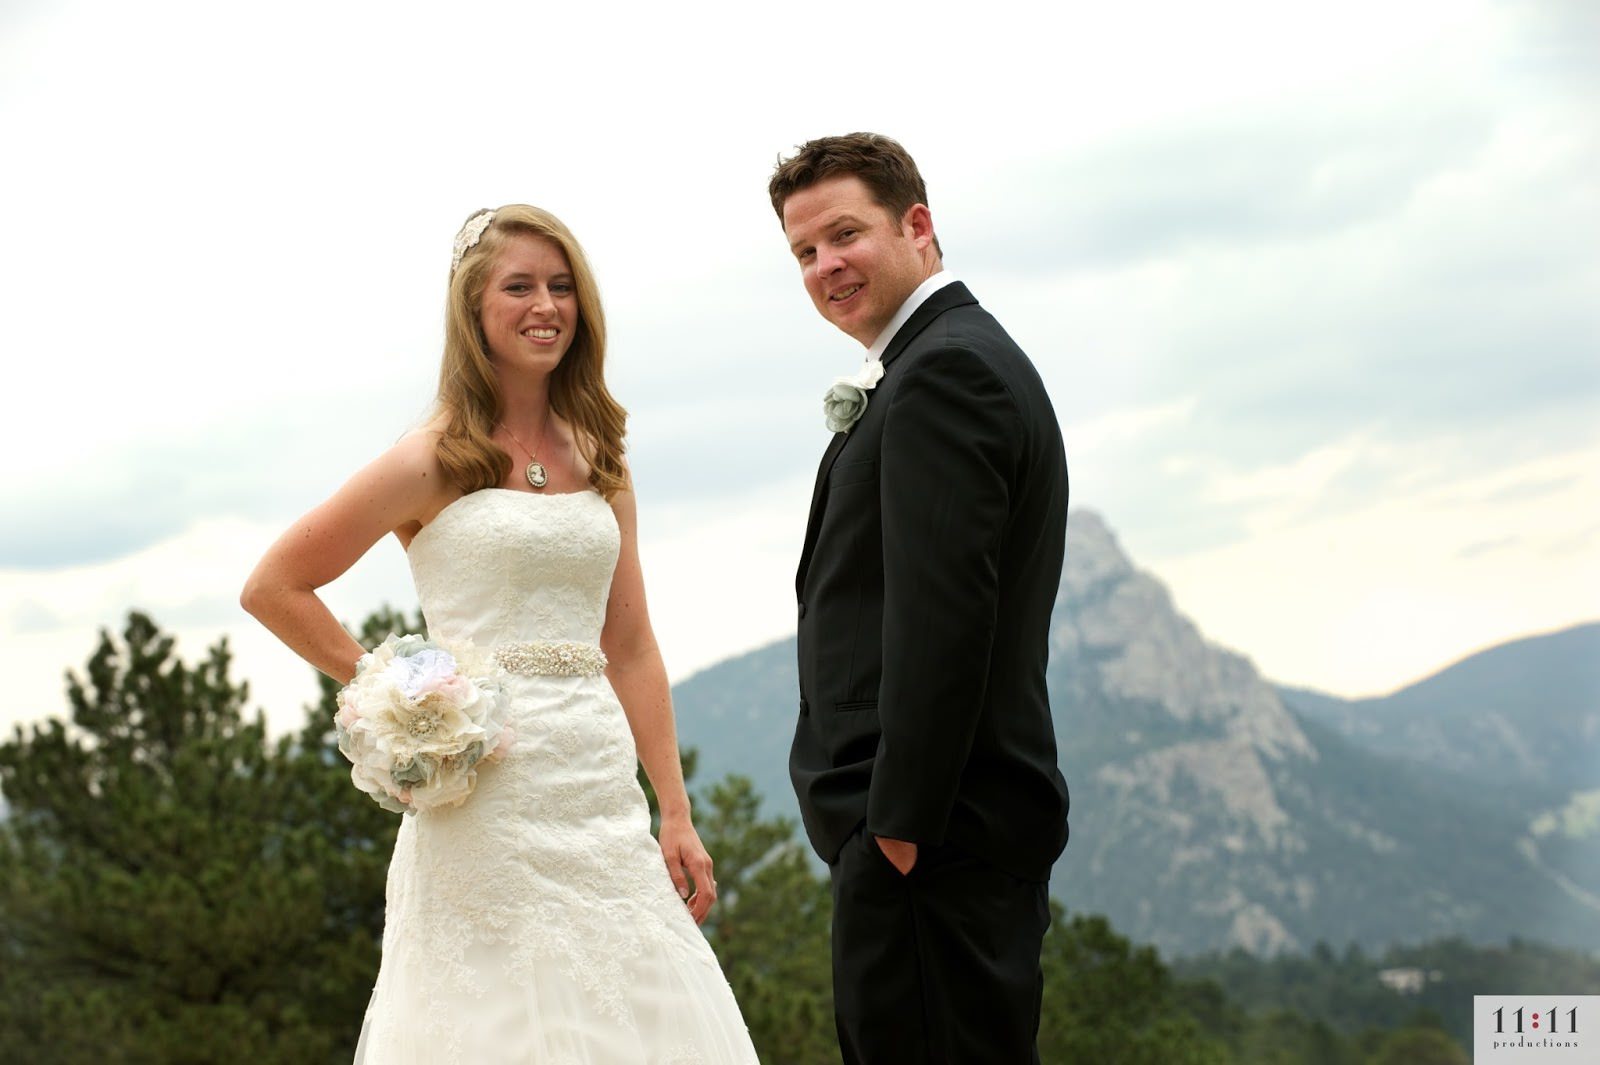 Historic wedding venues in Colorado